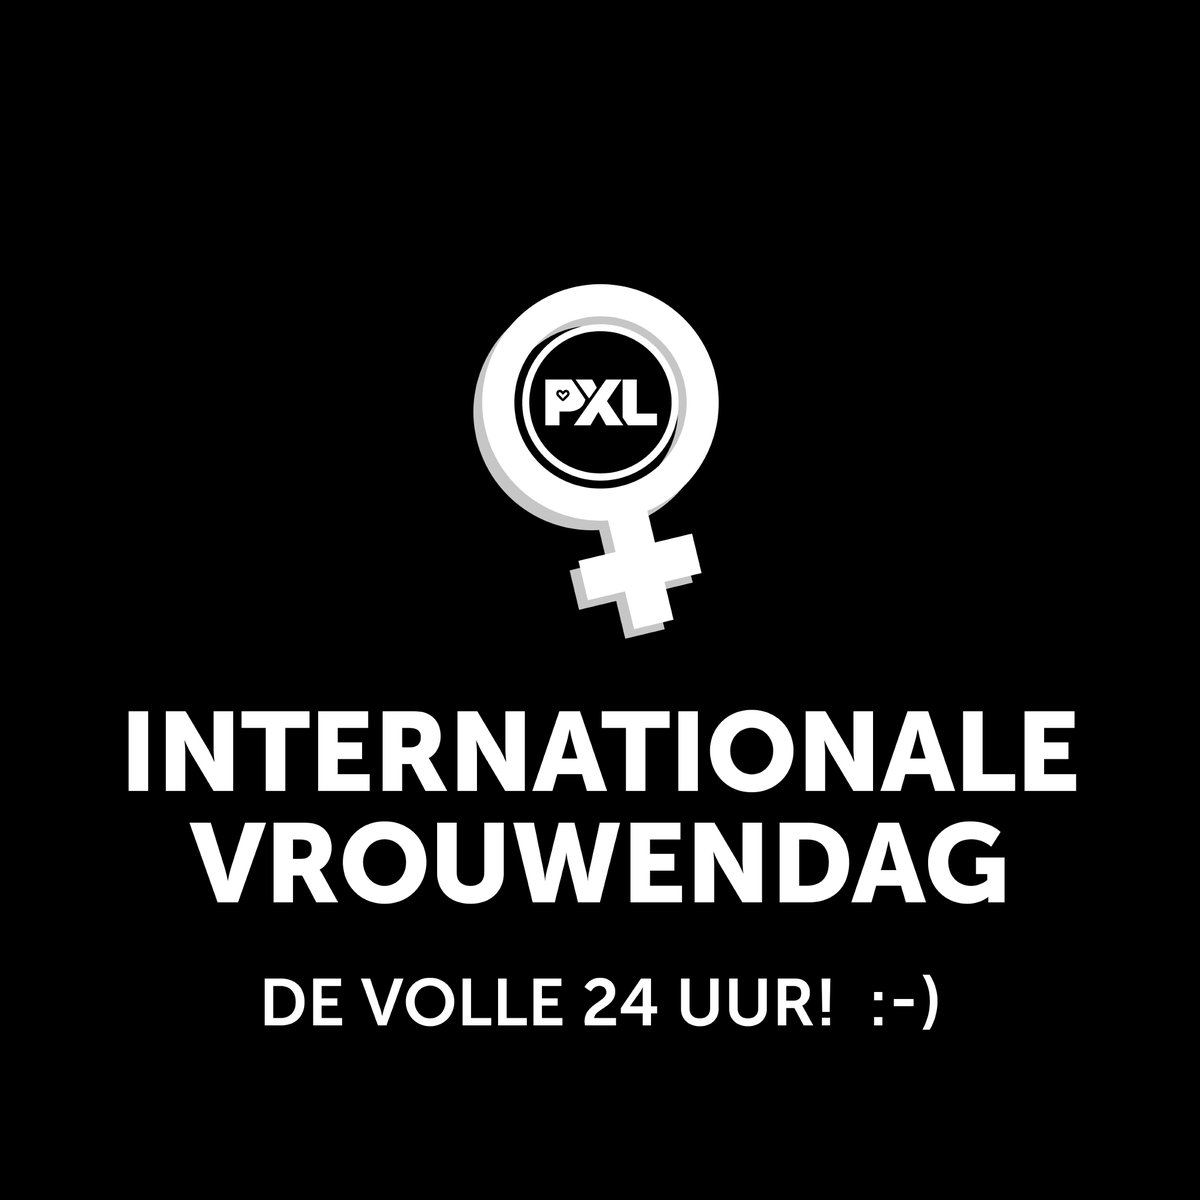 Alle meisjes aan de macht! 💪🏼 💓 #internationalevrouwendag